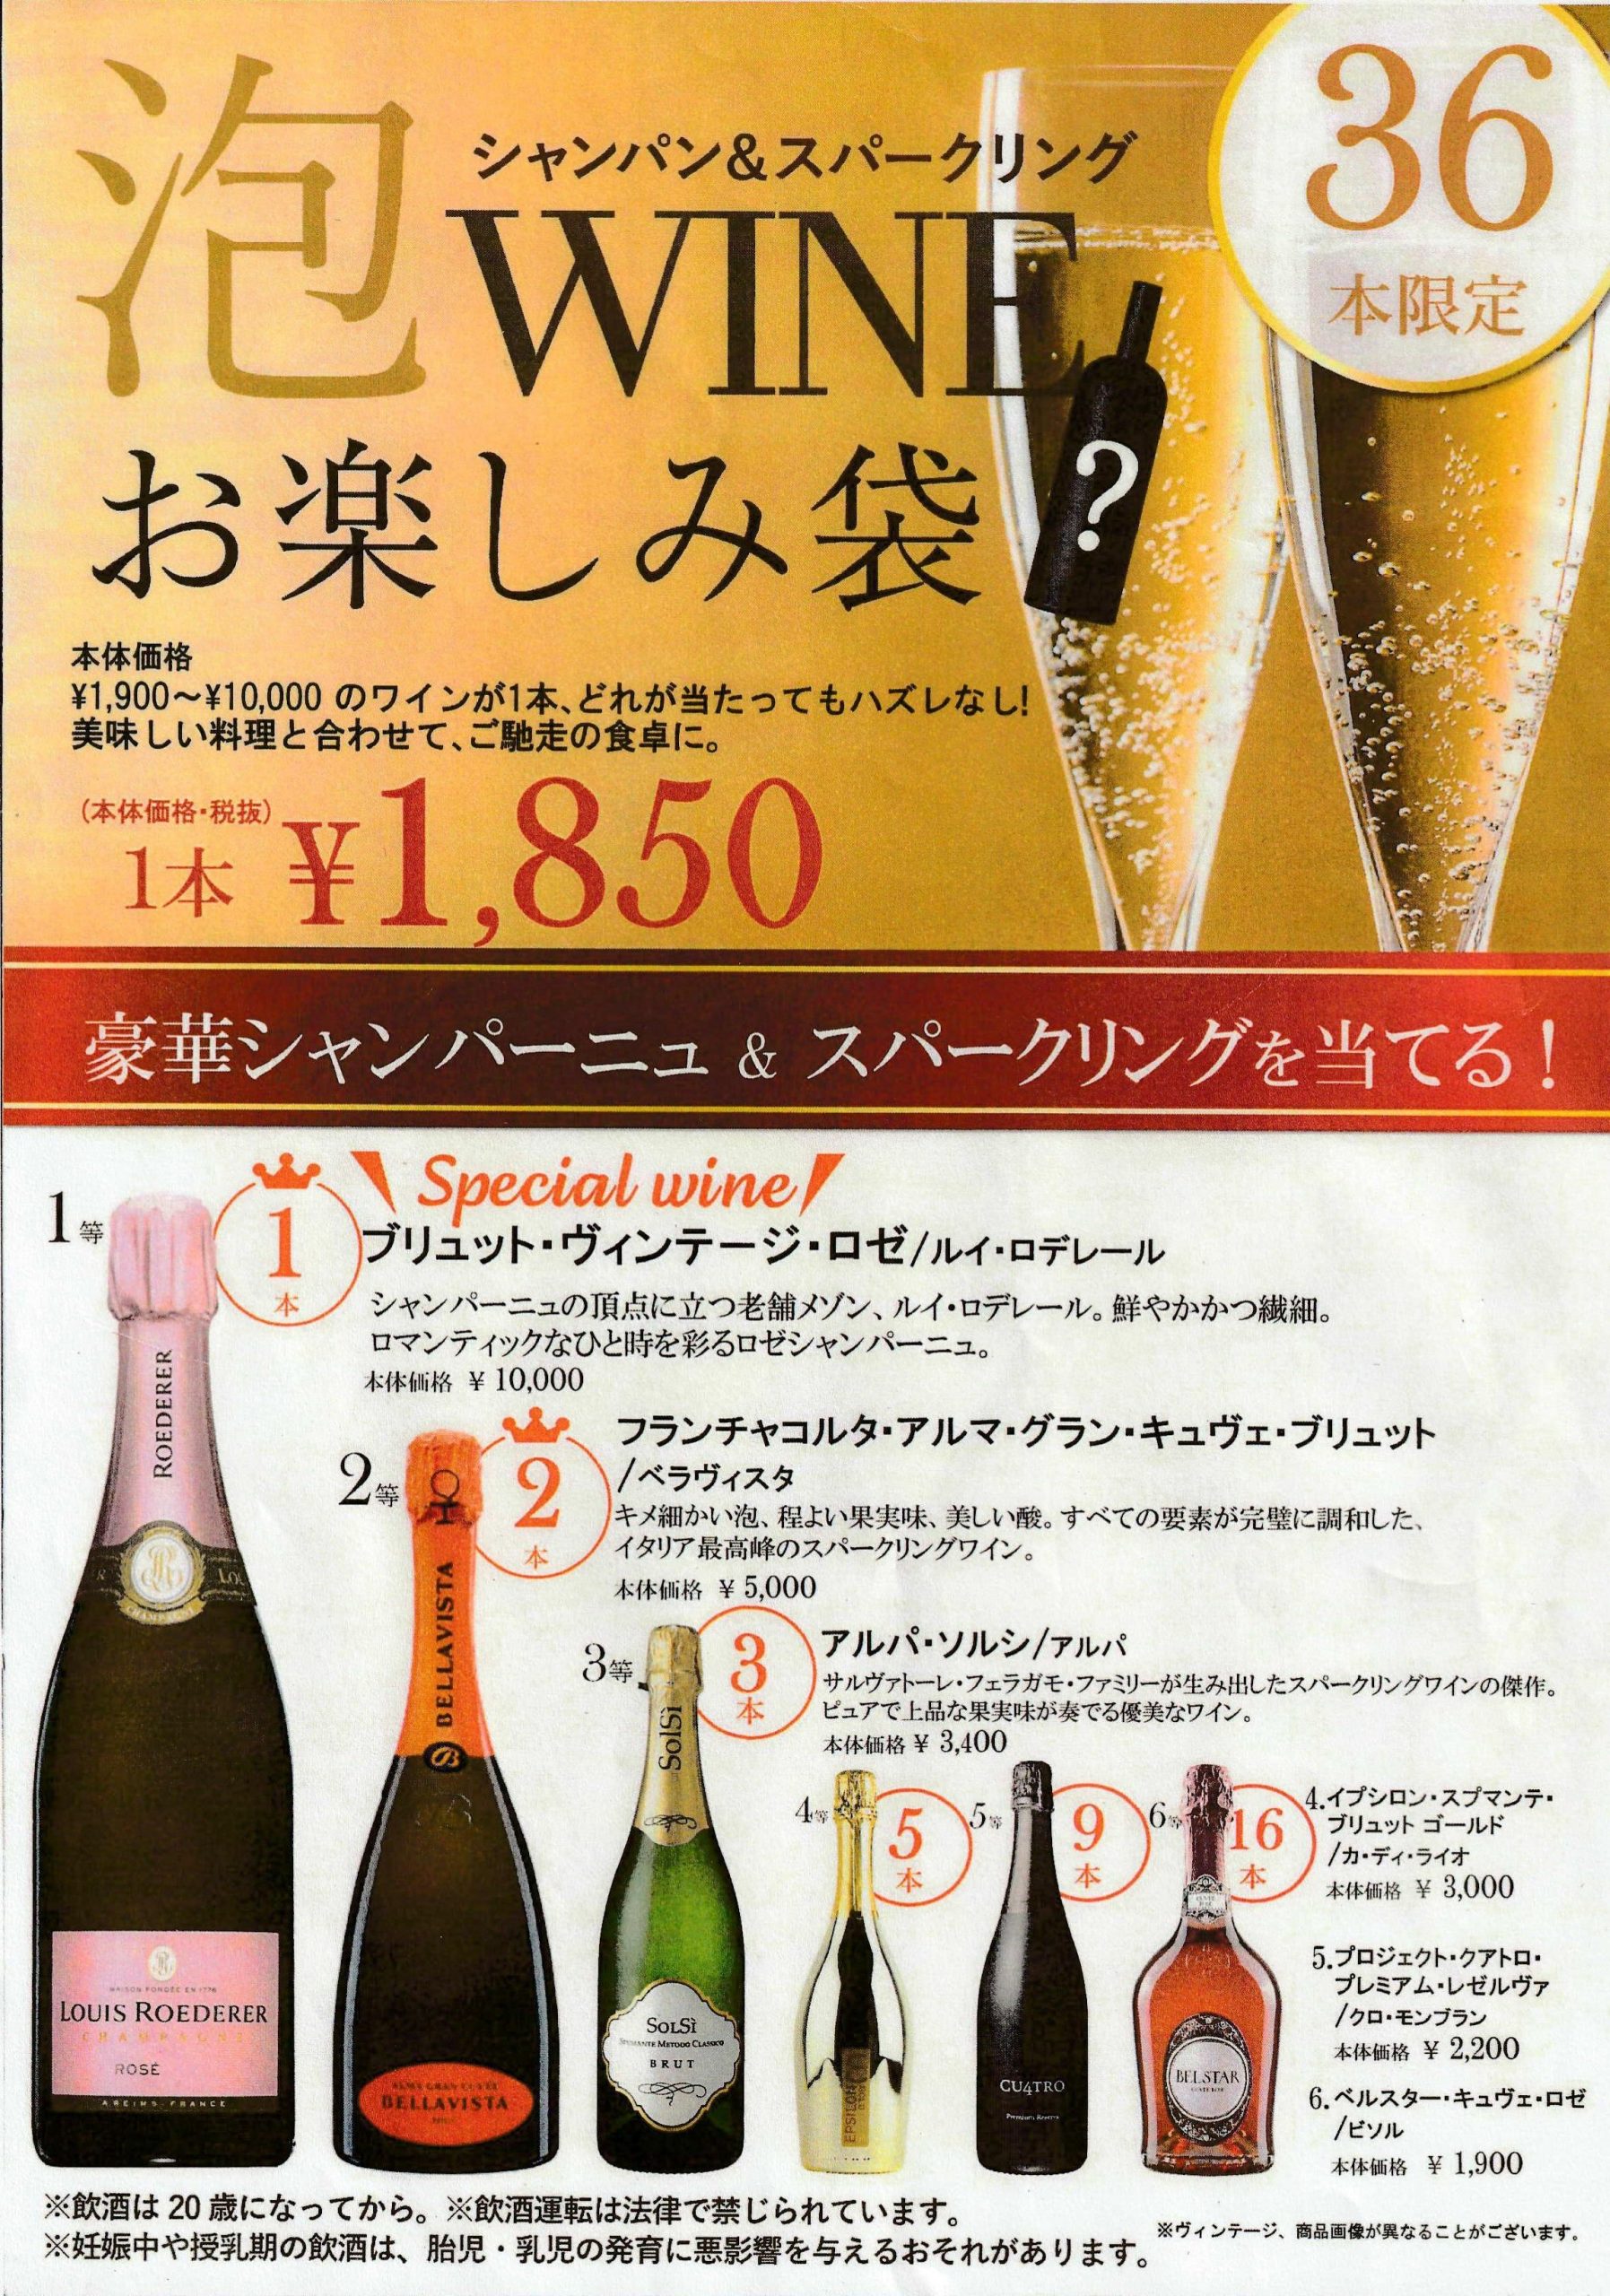 食品館 ワインお楽しみ袋 と コストコのシャンパン 好評販売中 Hc佐和田店